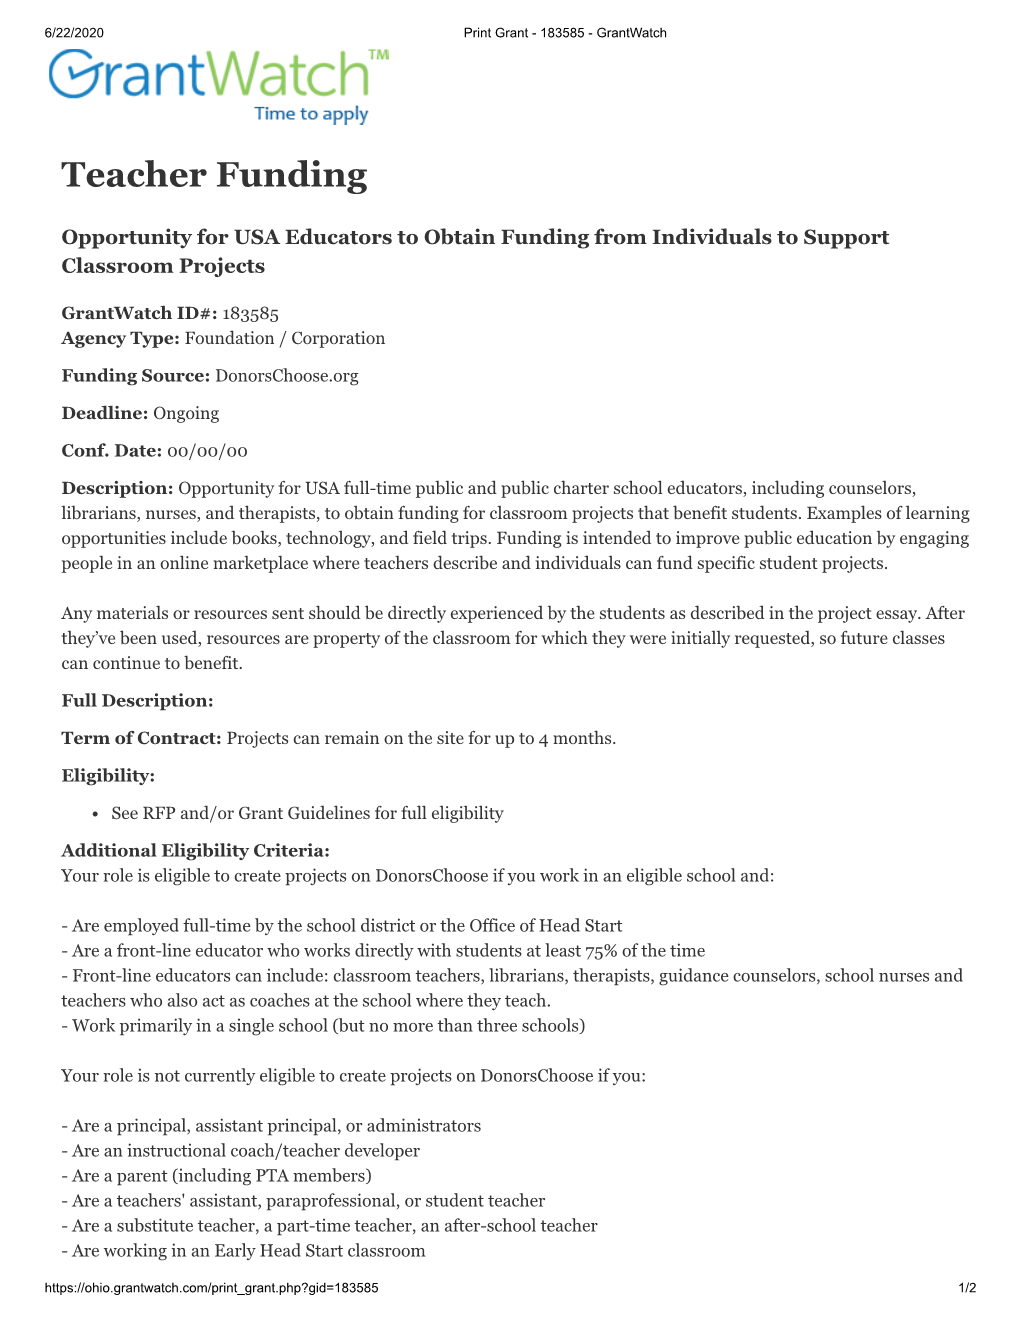 Teacher Funding